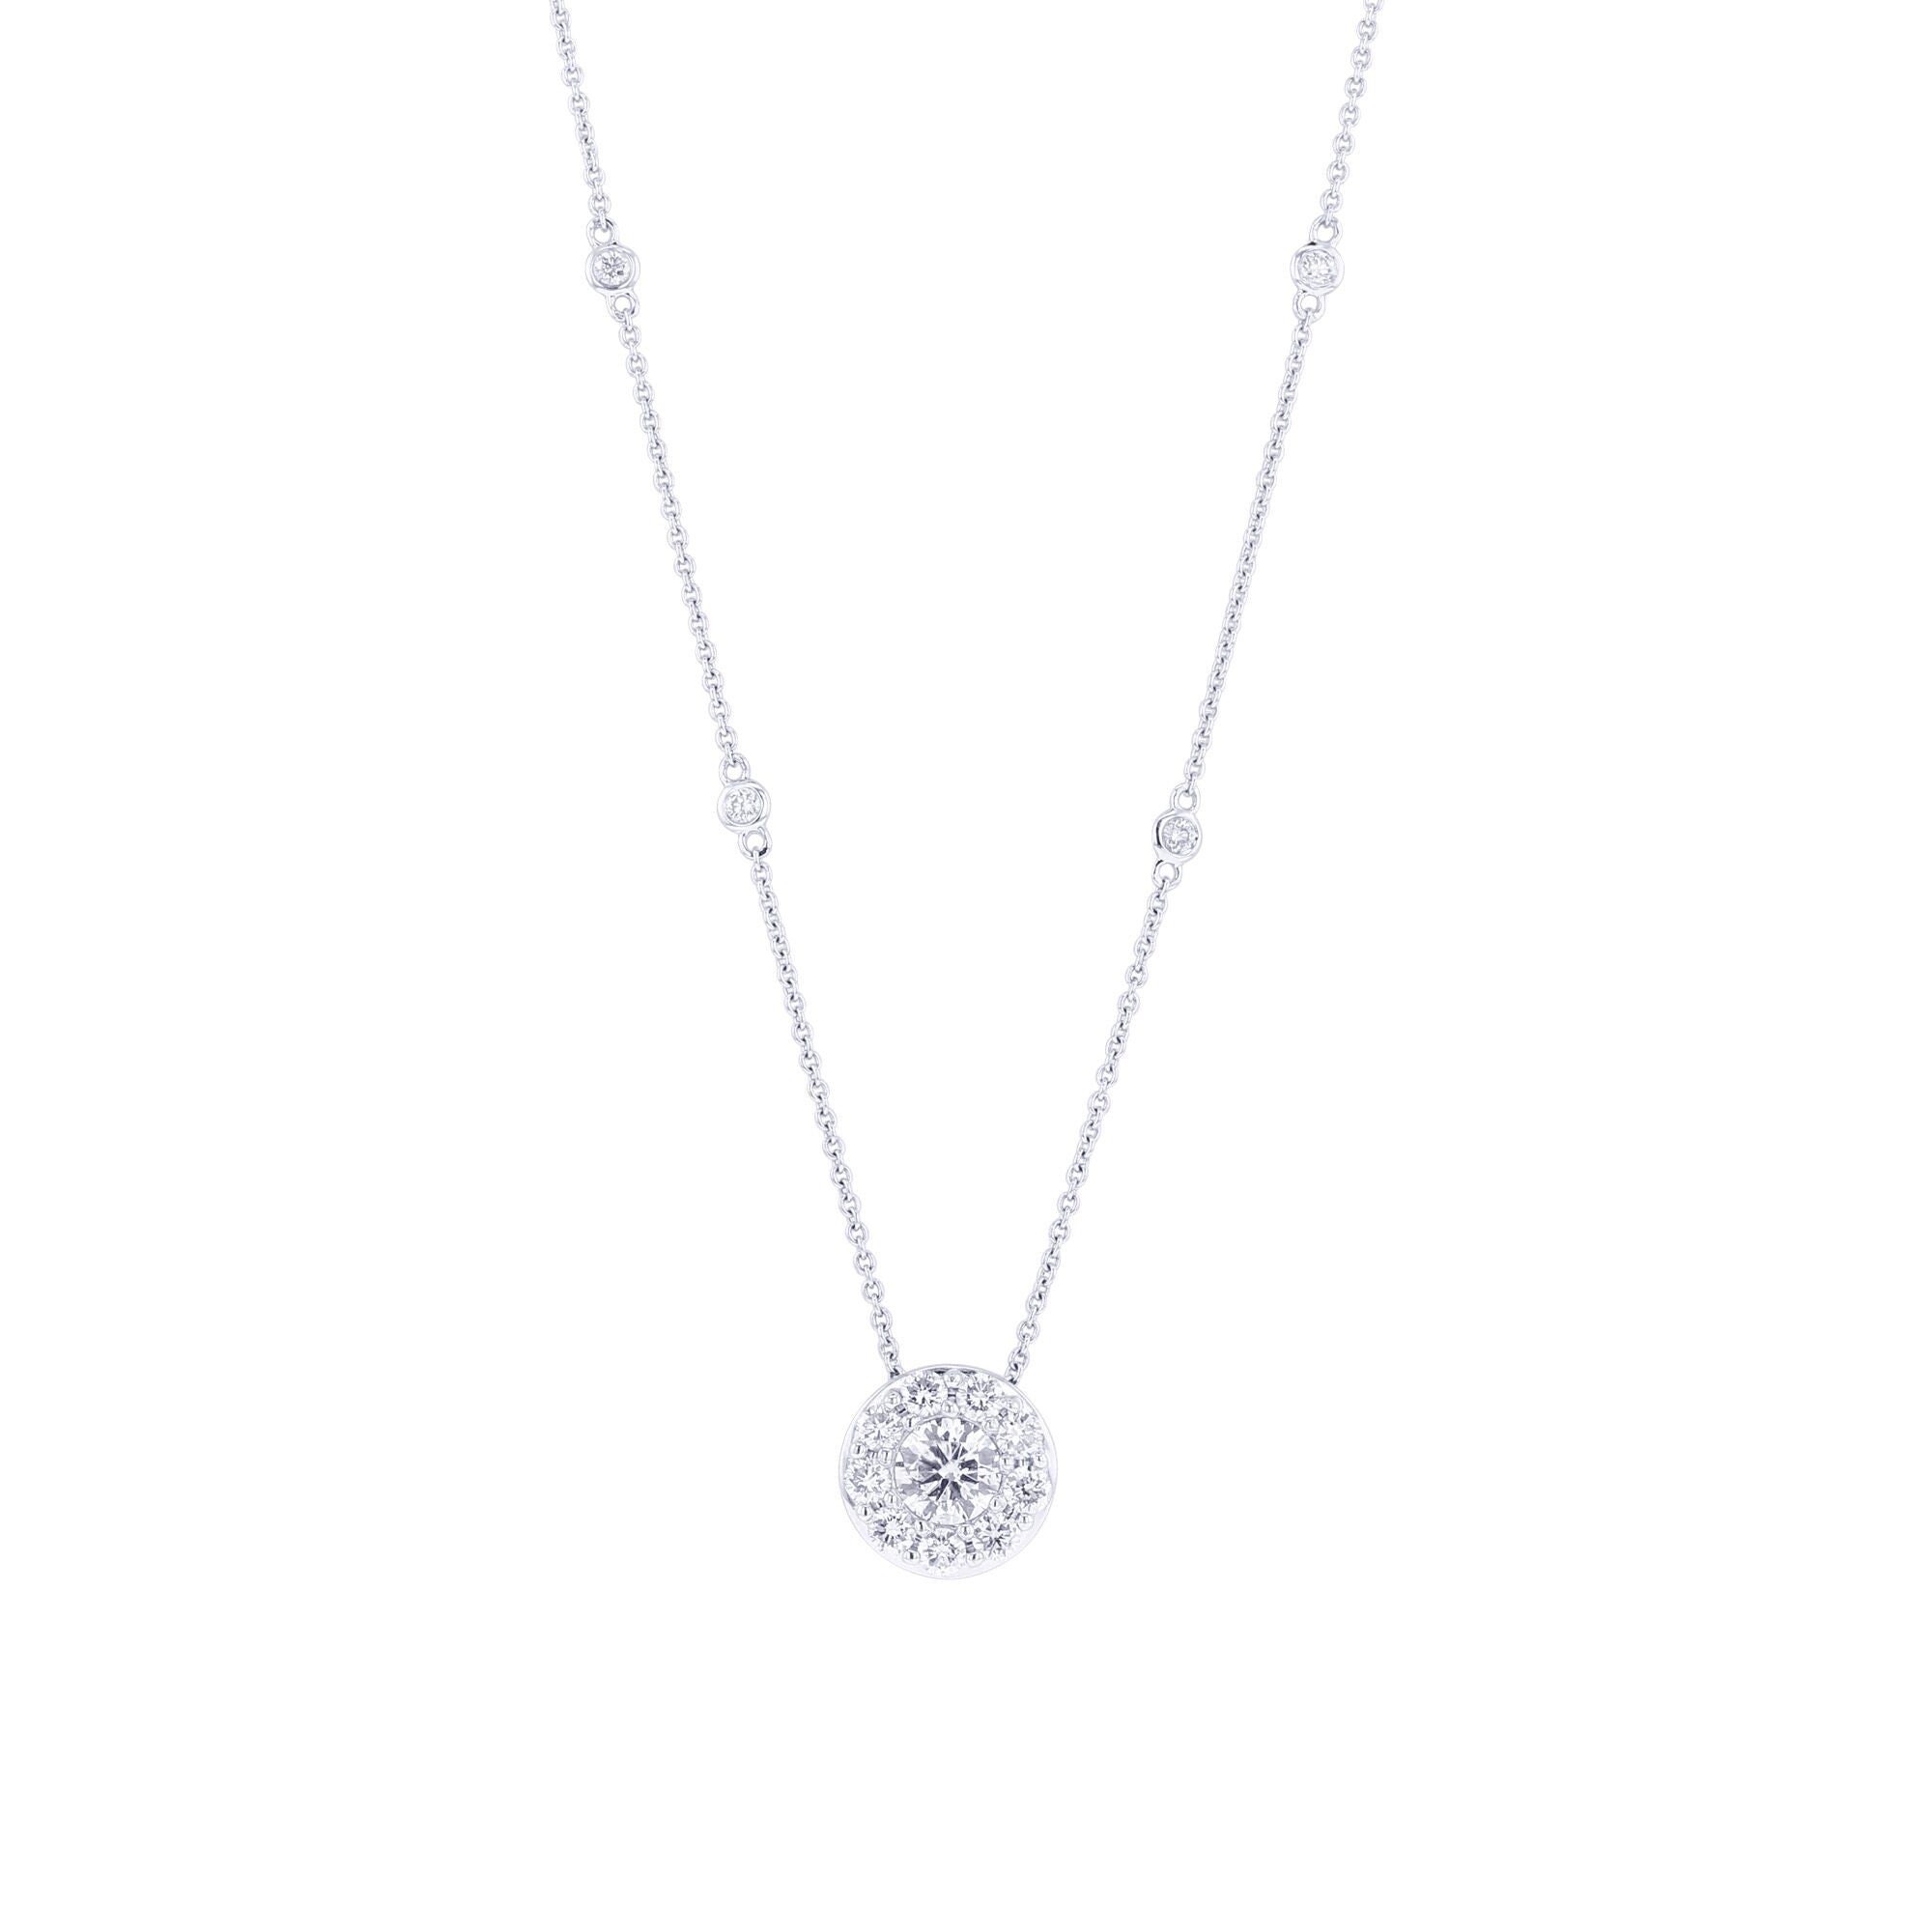 Diamond Halo Necklace, Round Diamond, .50 Carat, Pave Diamonds, White Gold